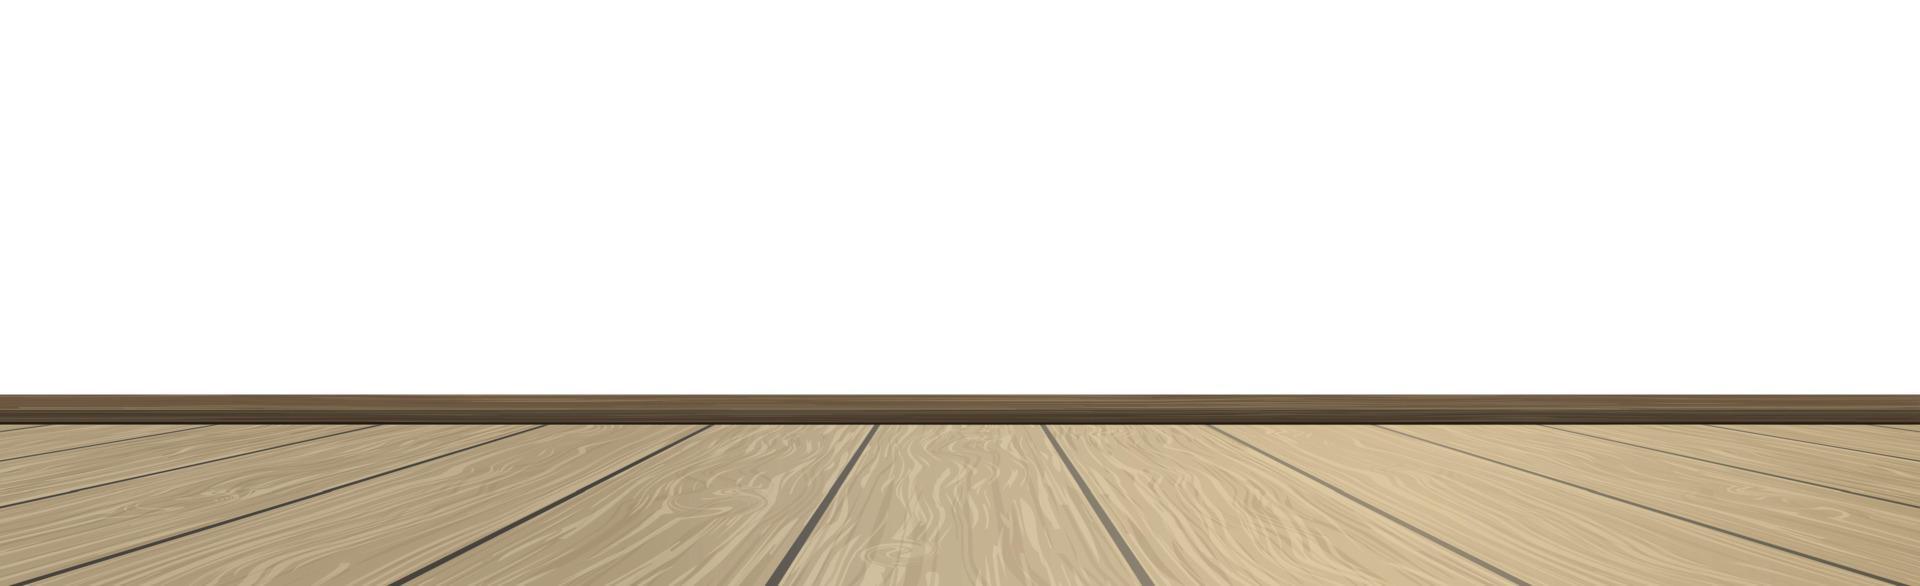 realistische lichte houten vloer en witte muur, achtergrond voor presentatie - vector